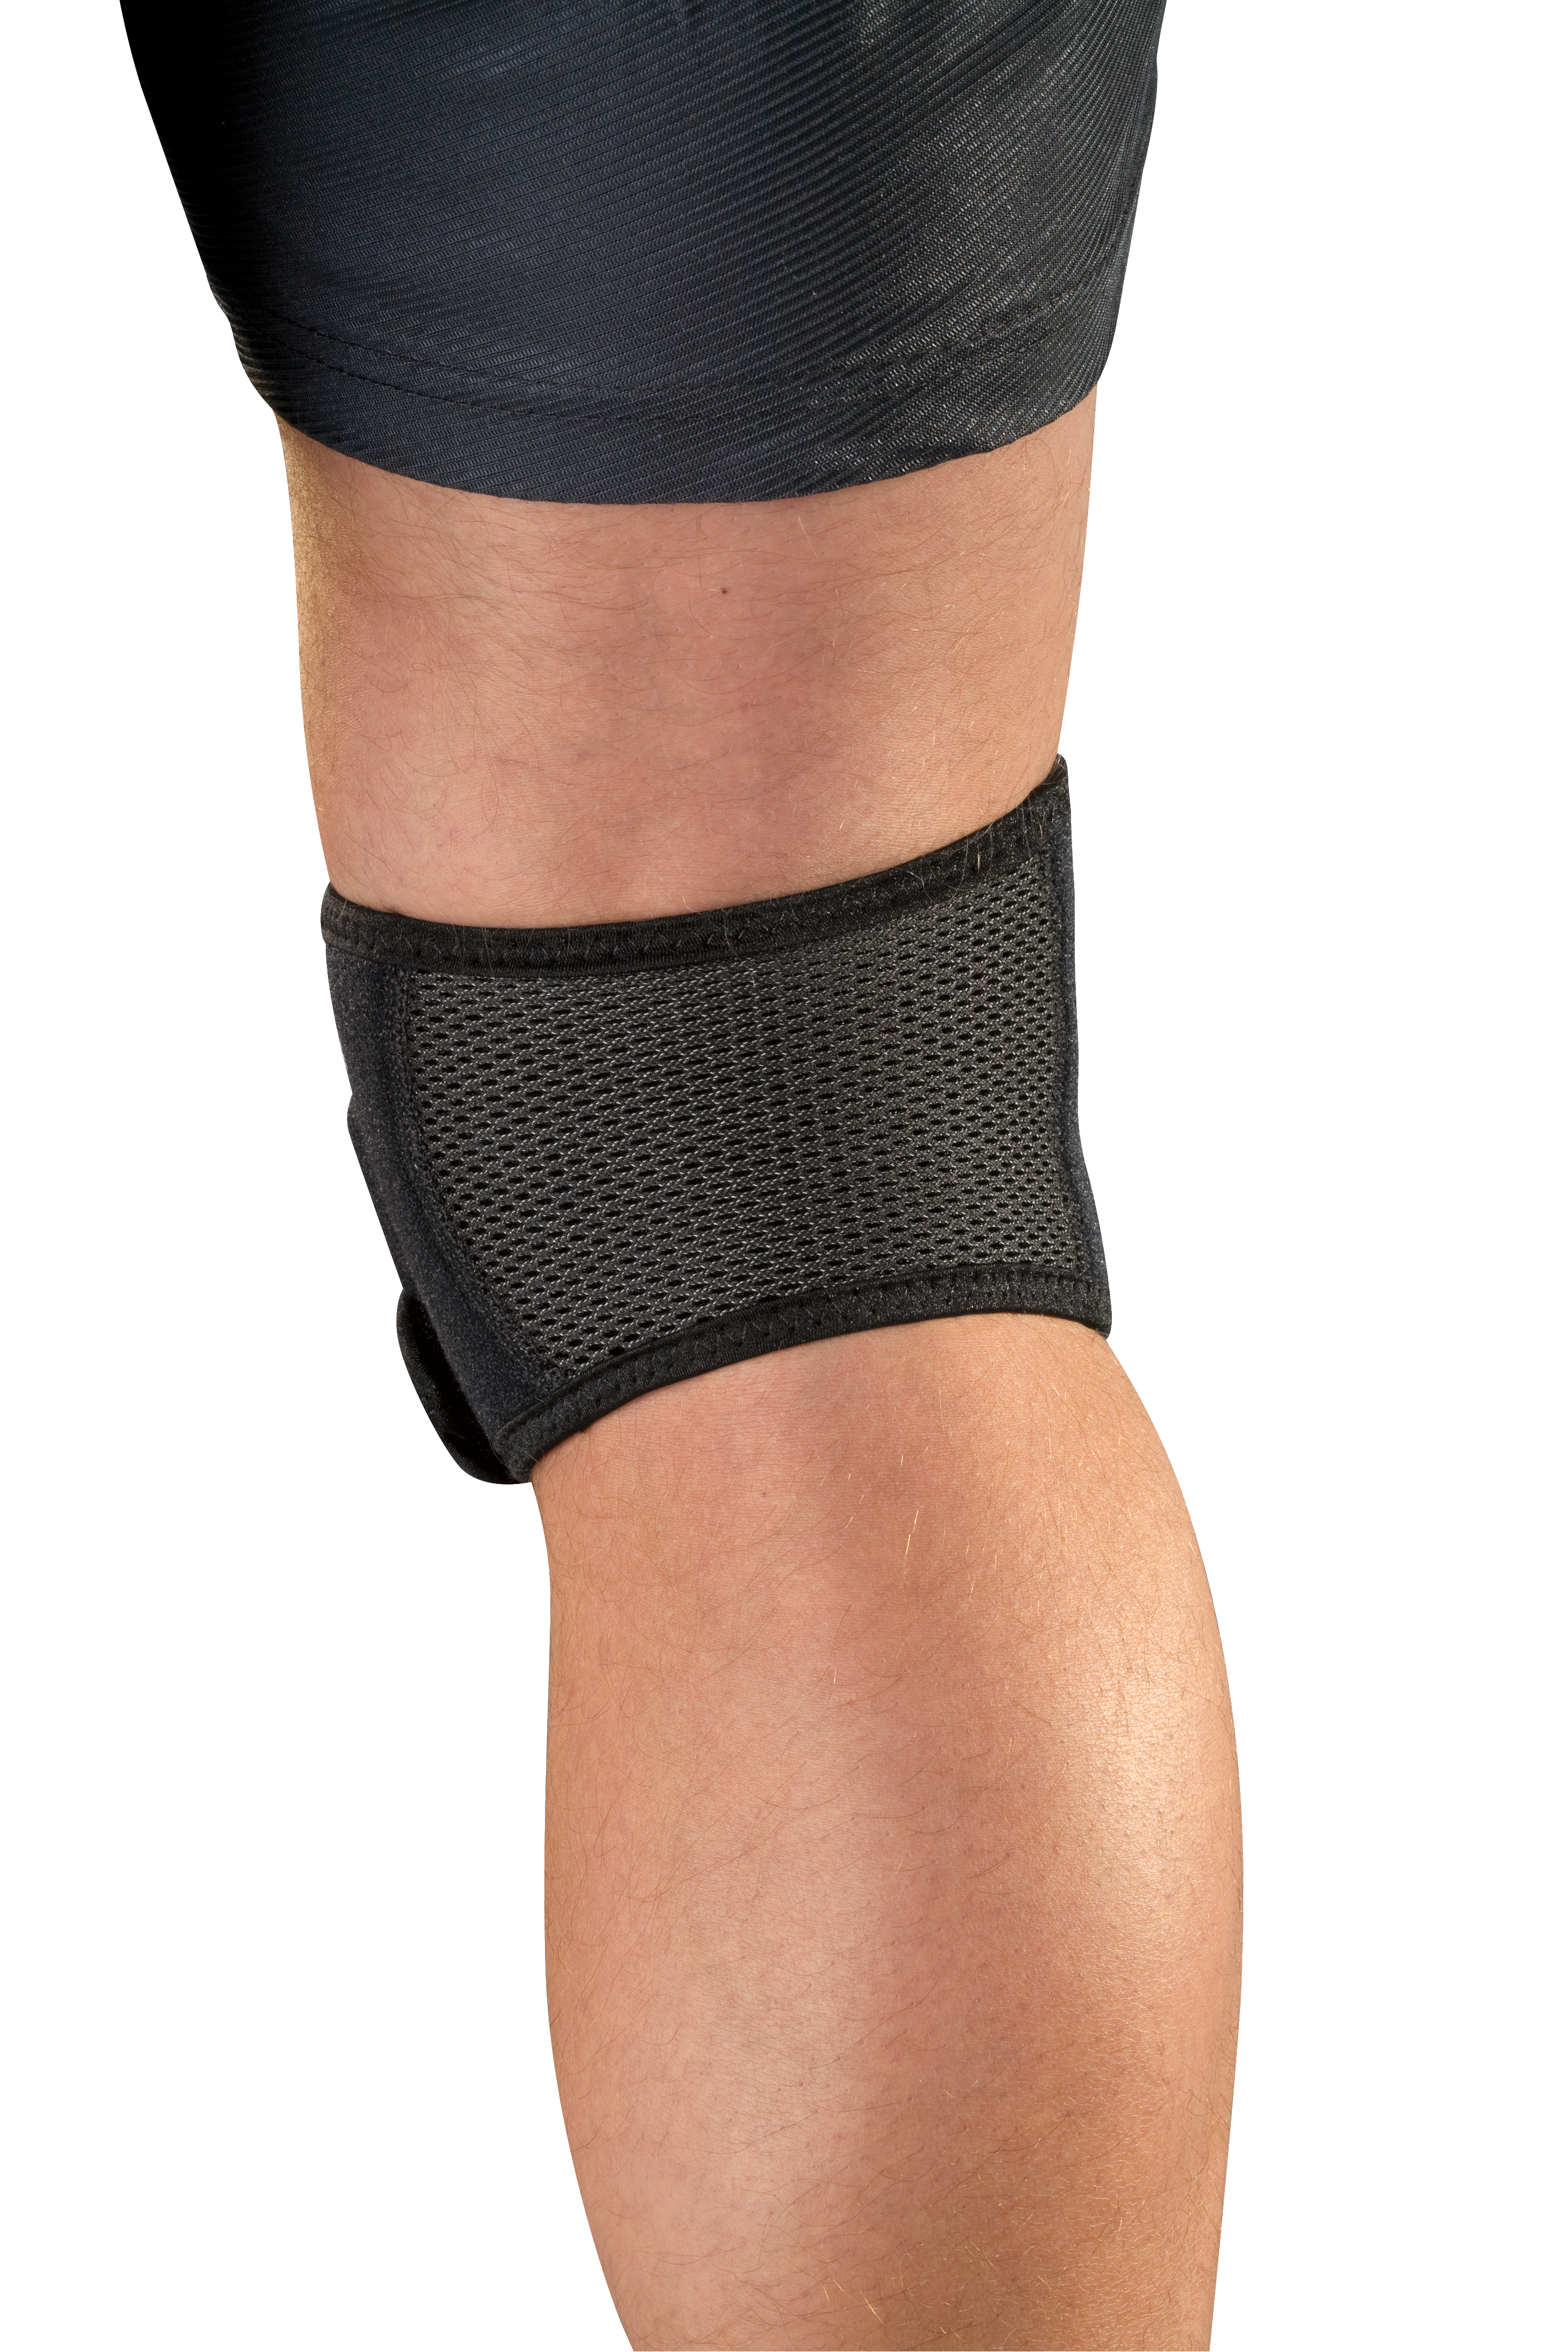 Mueller Adjustable Max Knee Strap 59857 Produkt angezogen am Knie von hinten